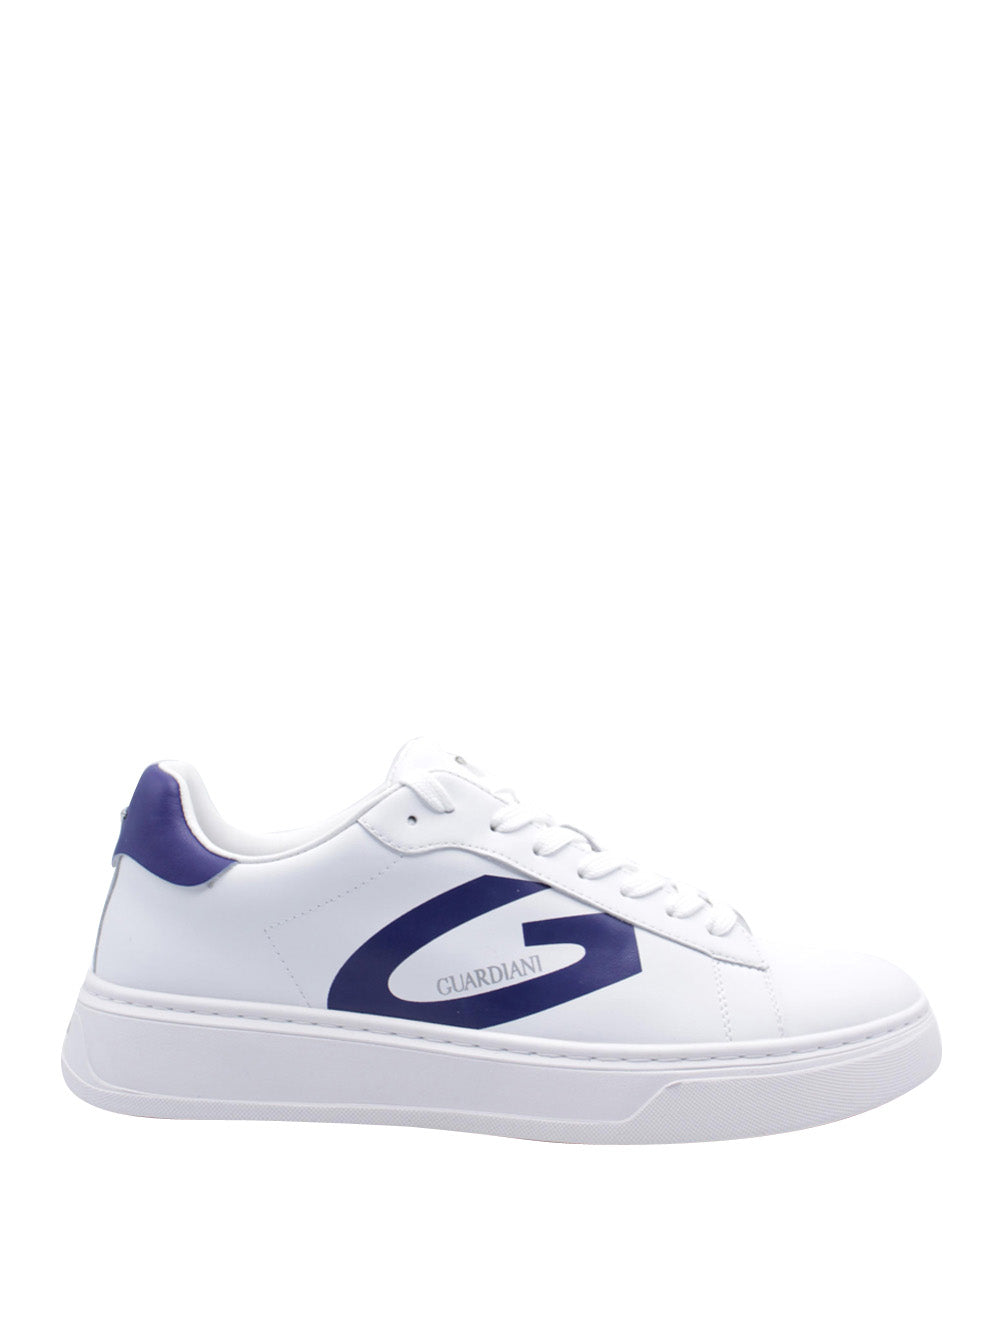 GUARDIANI Sneakers Uomo - Bianco modello AGM025001